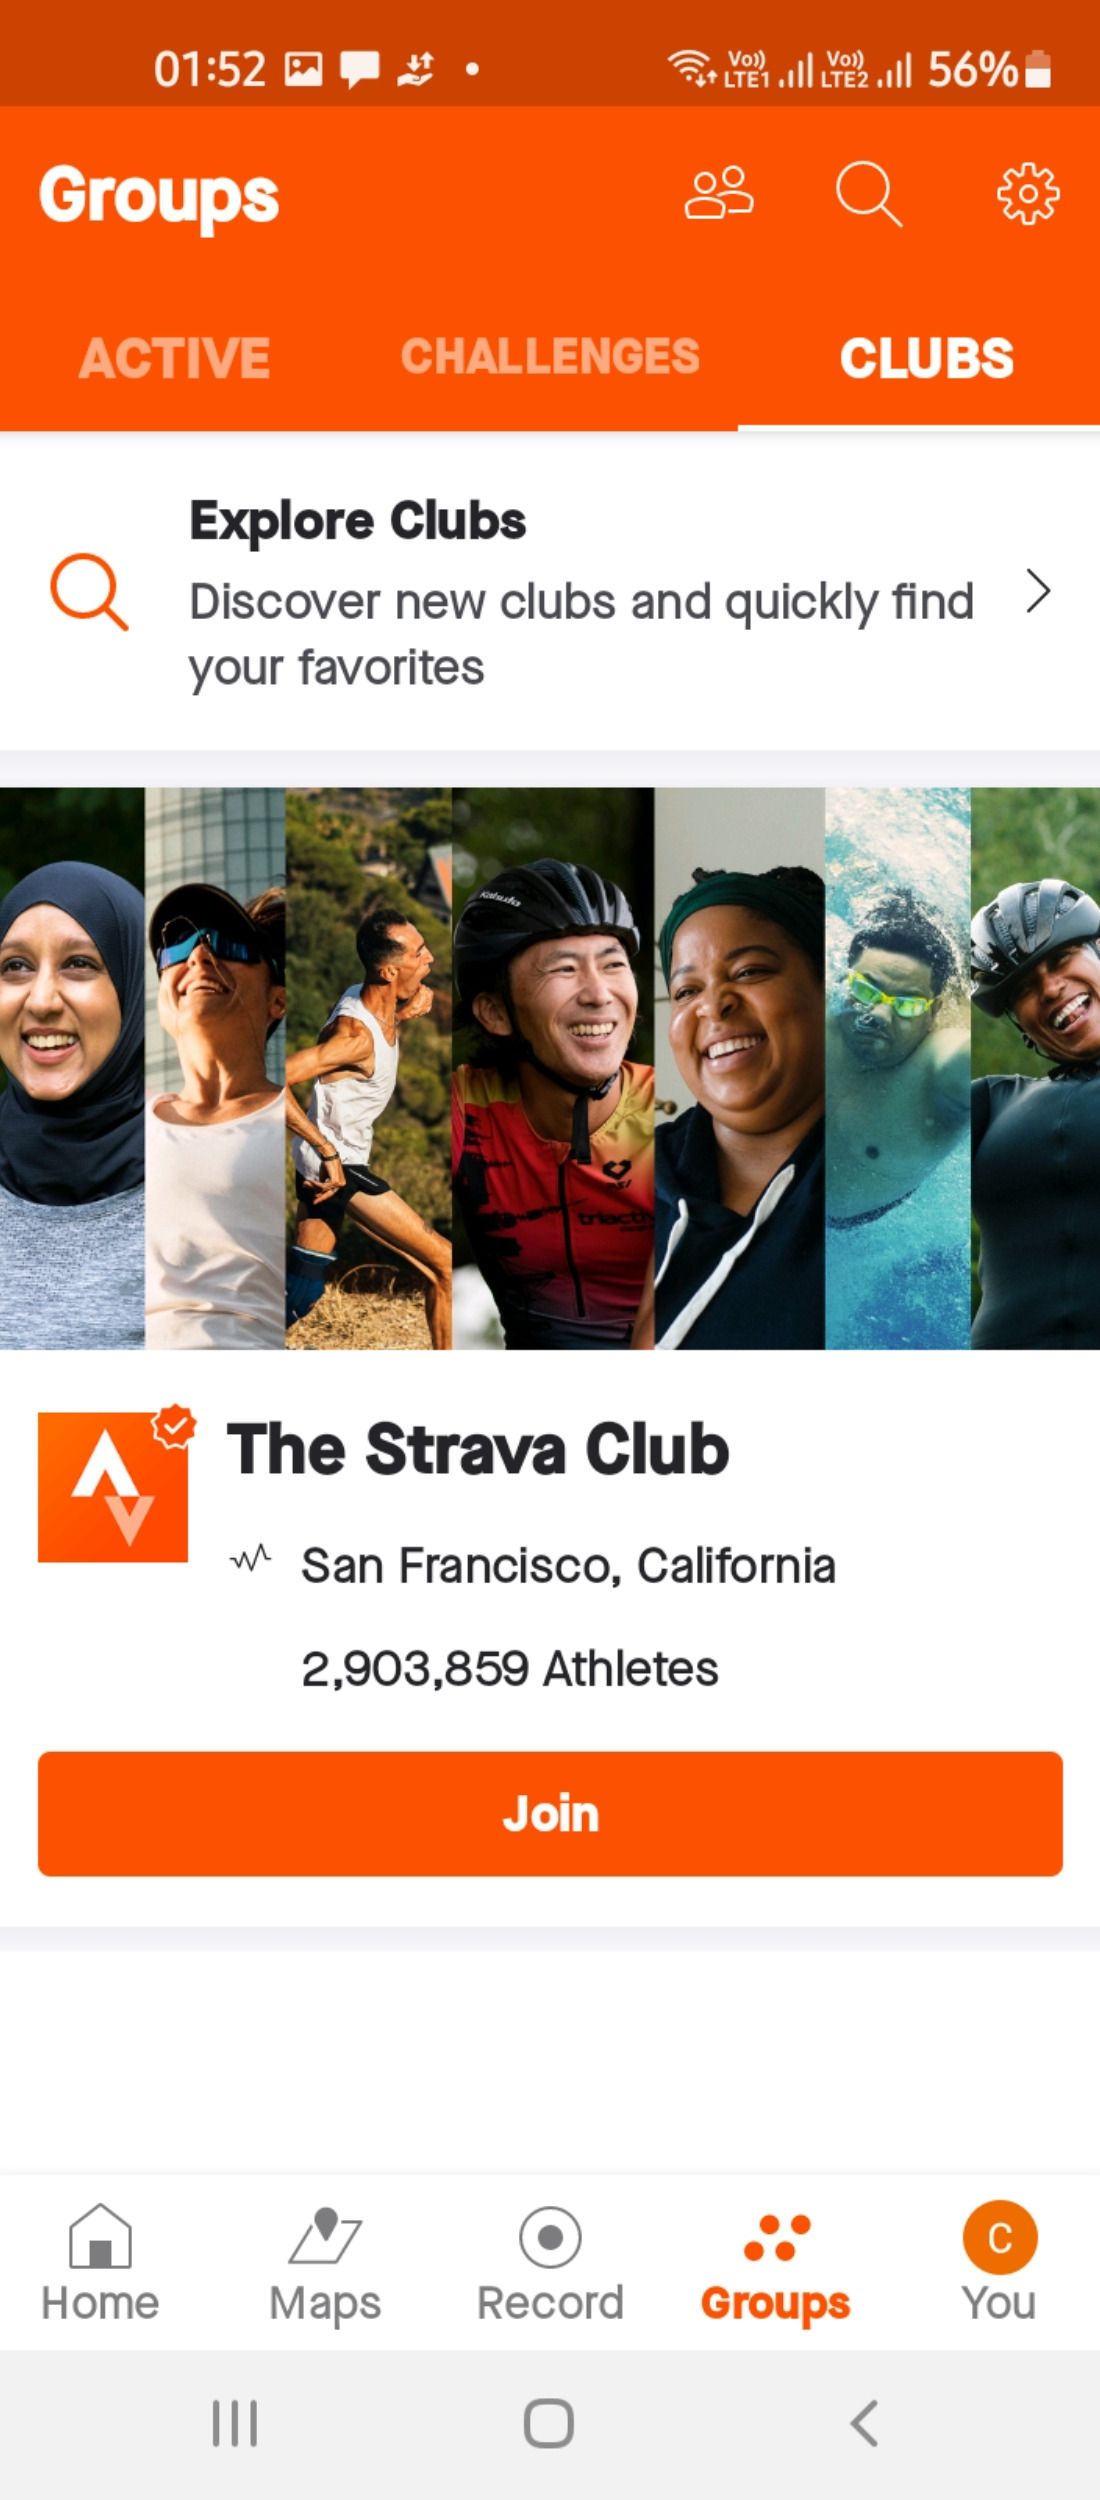 Club memberships in Strava fitness app